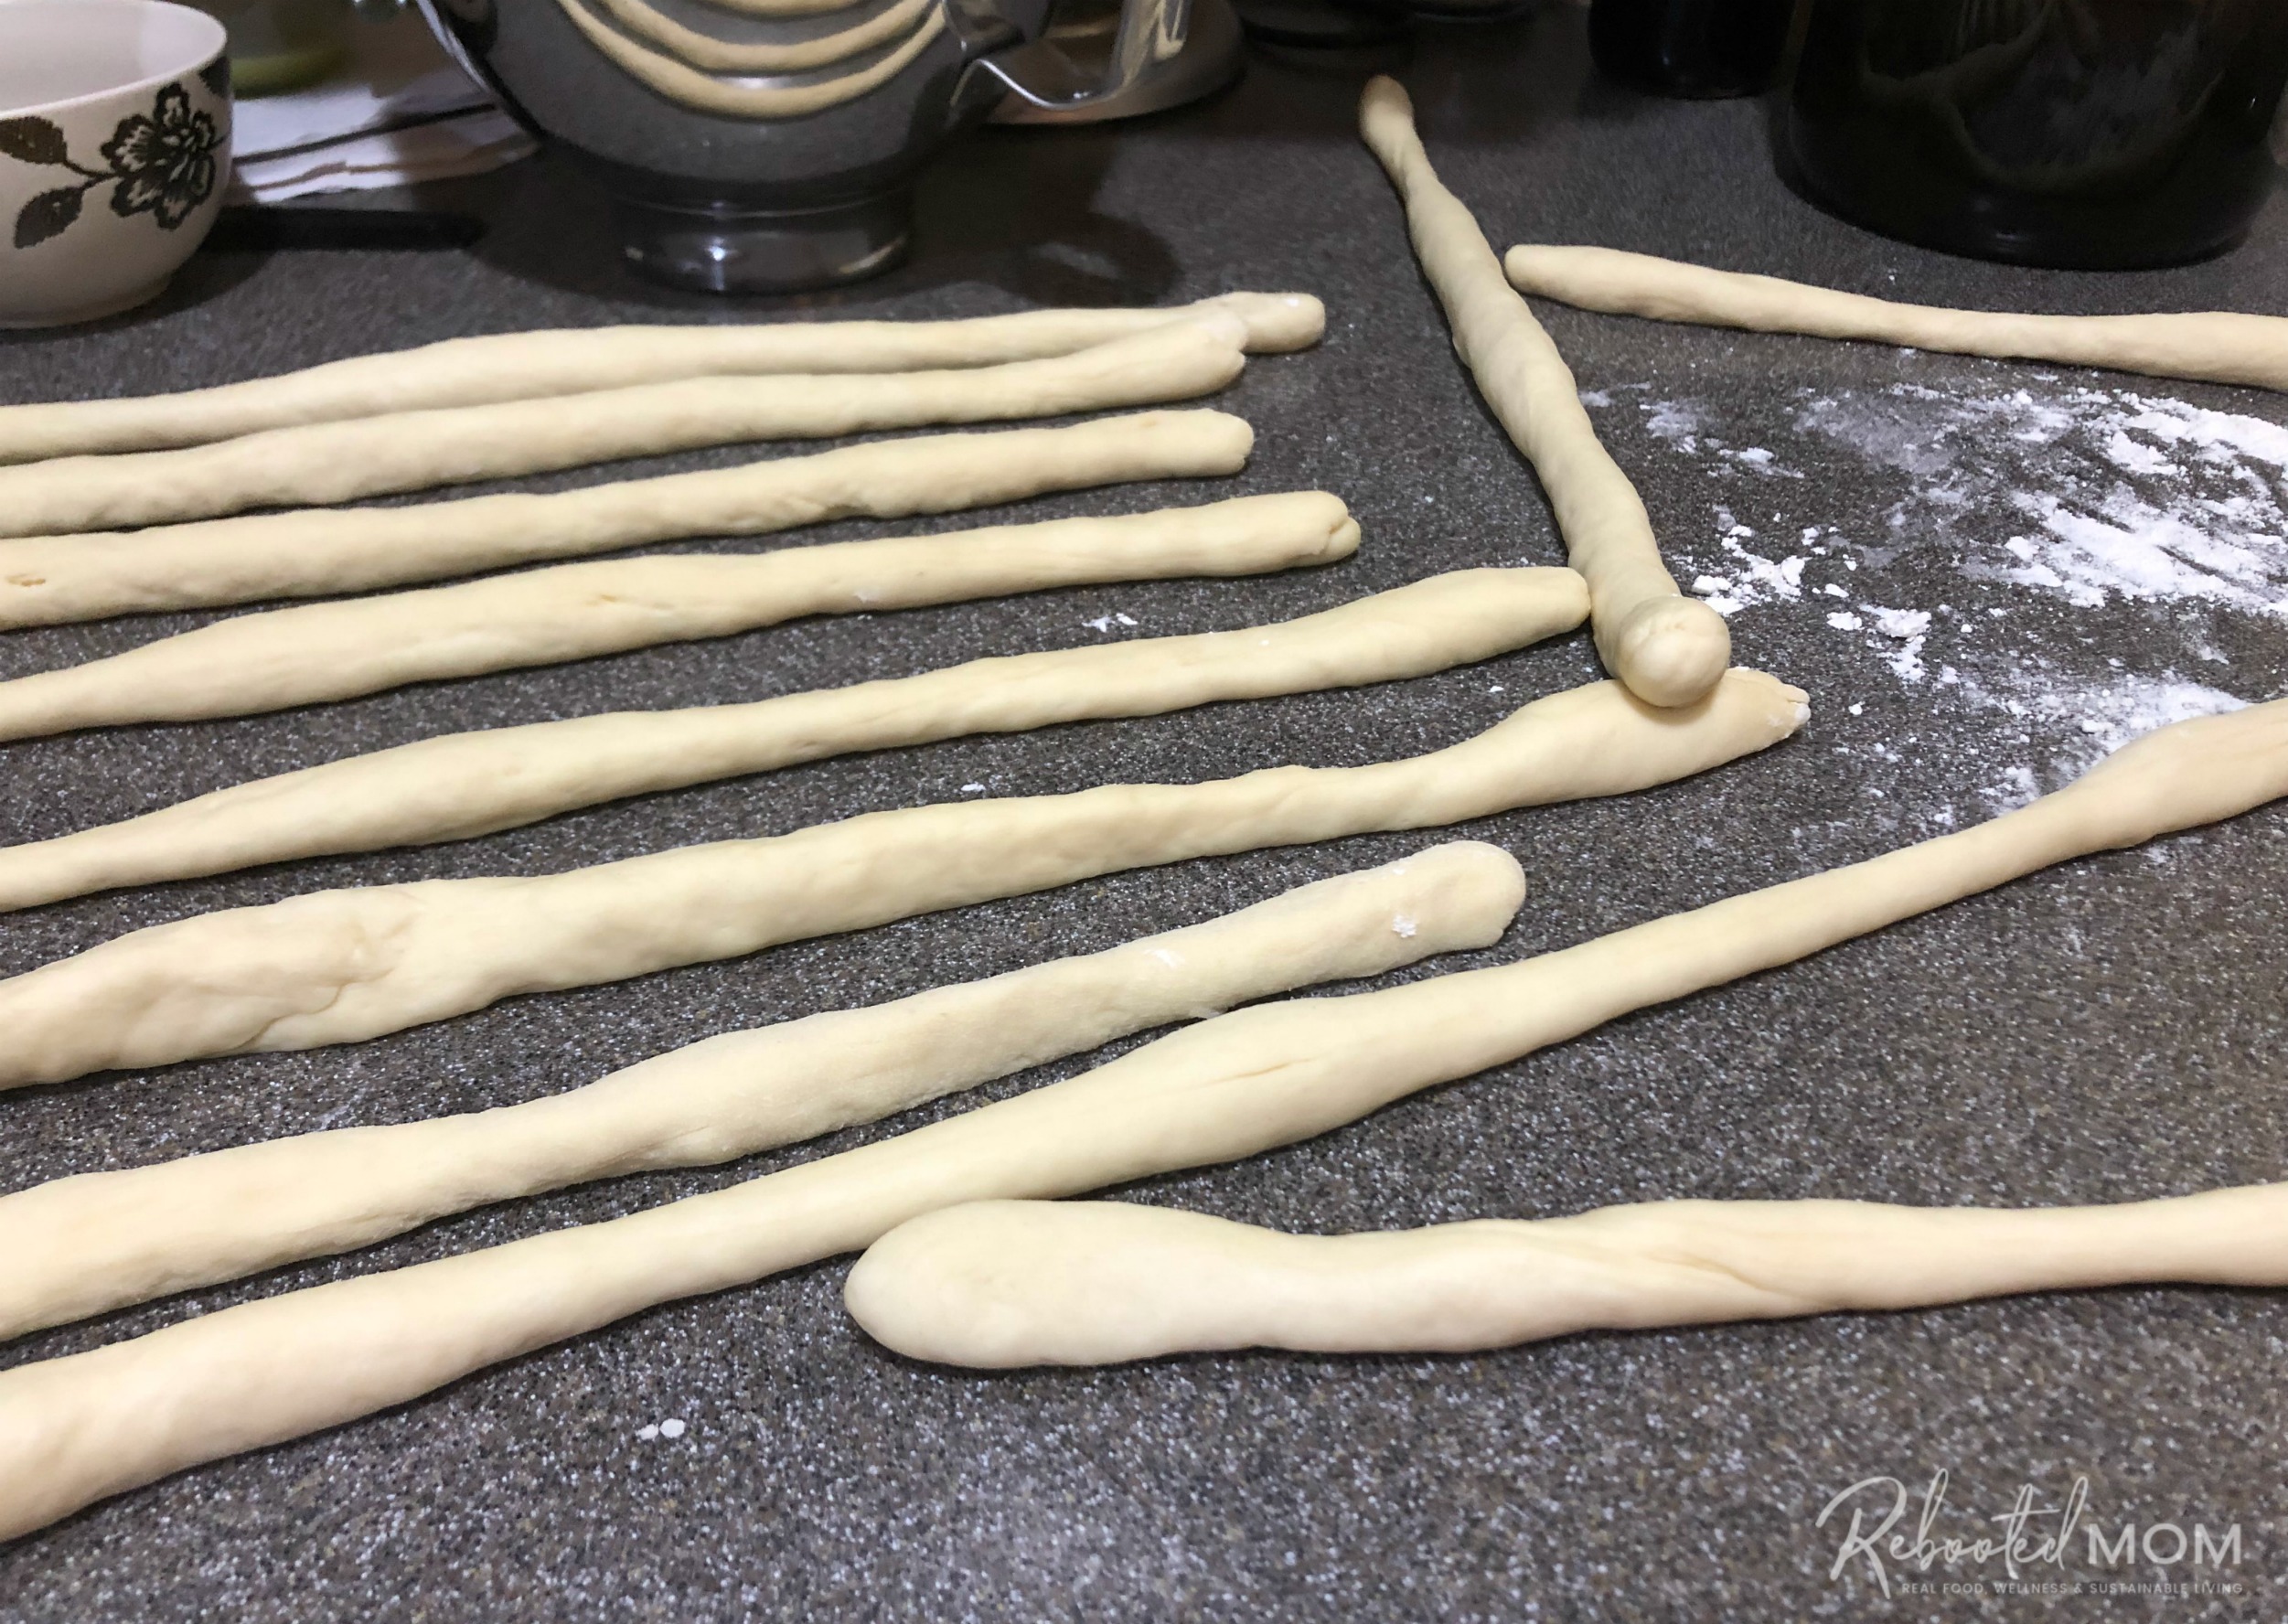 Rolling out sourdough pretzels